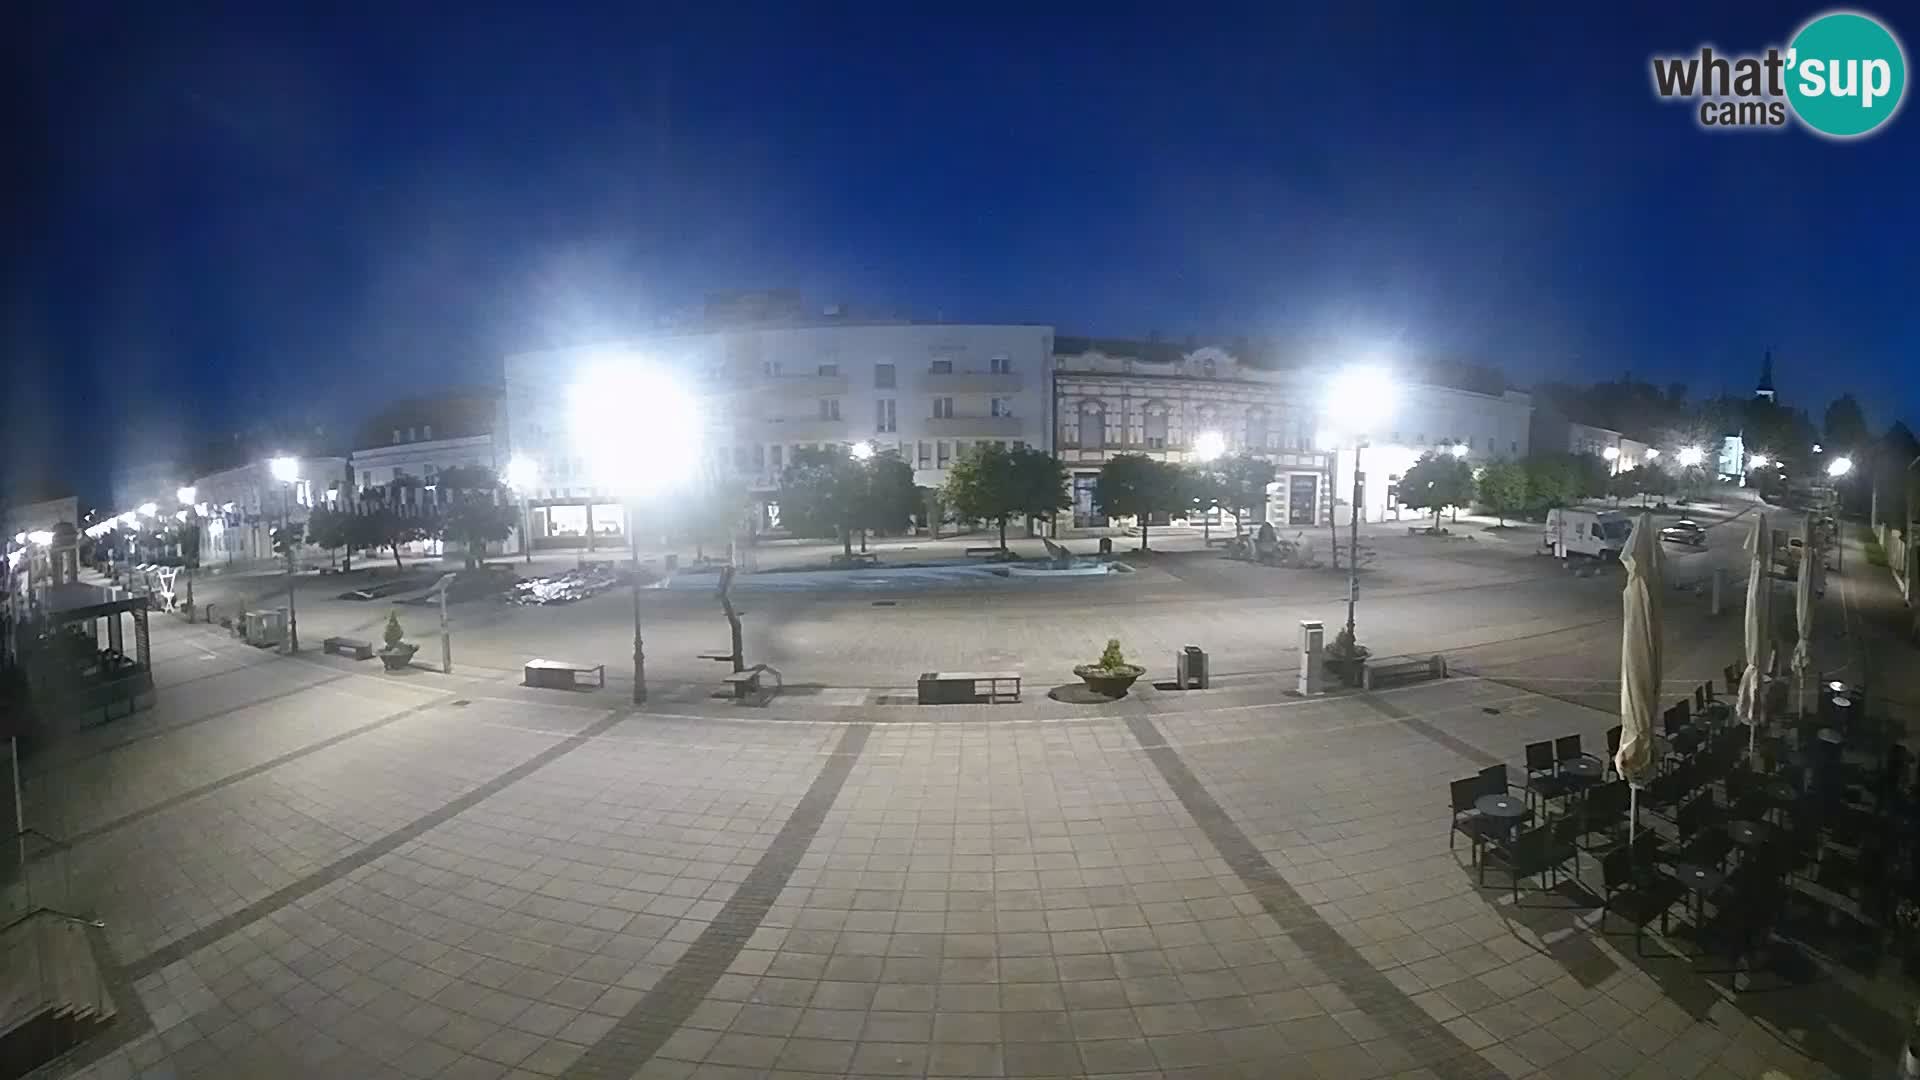 Daruva – Platz könig Tomislav